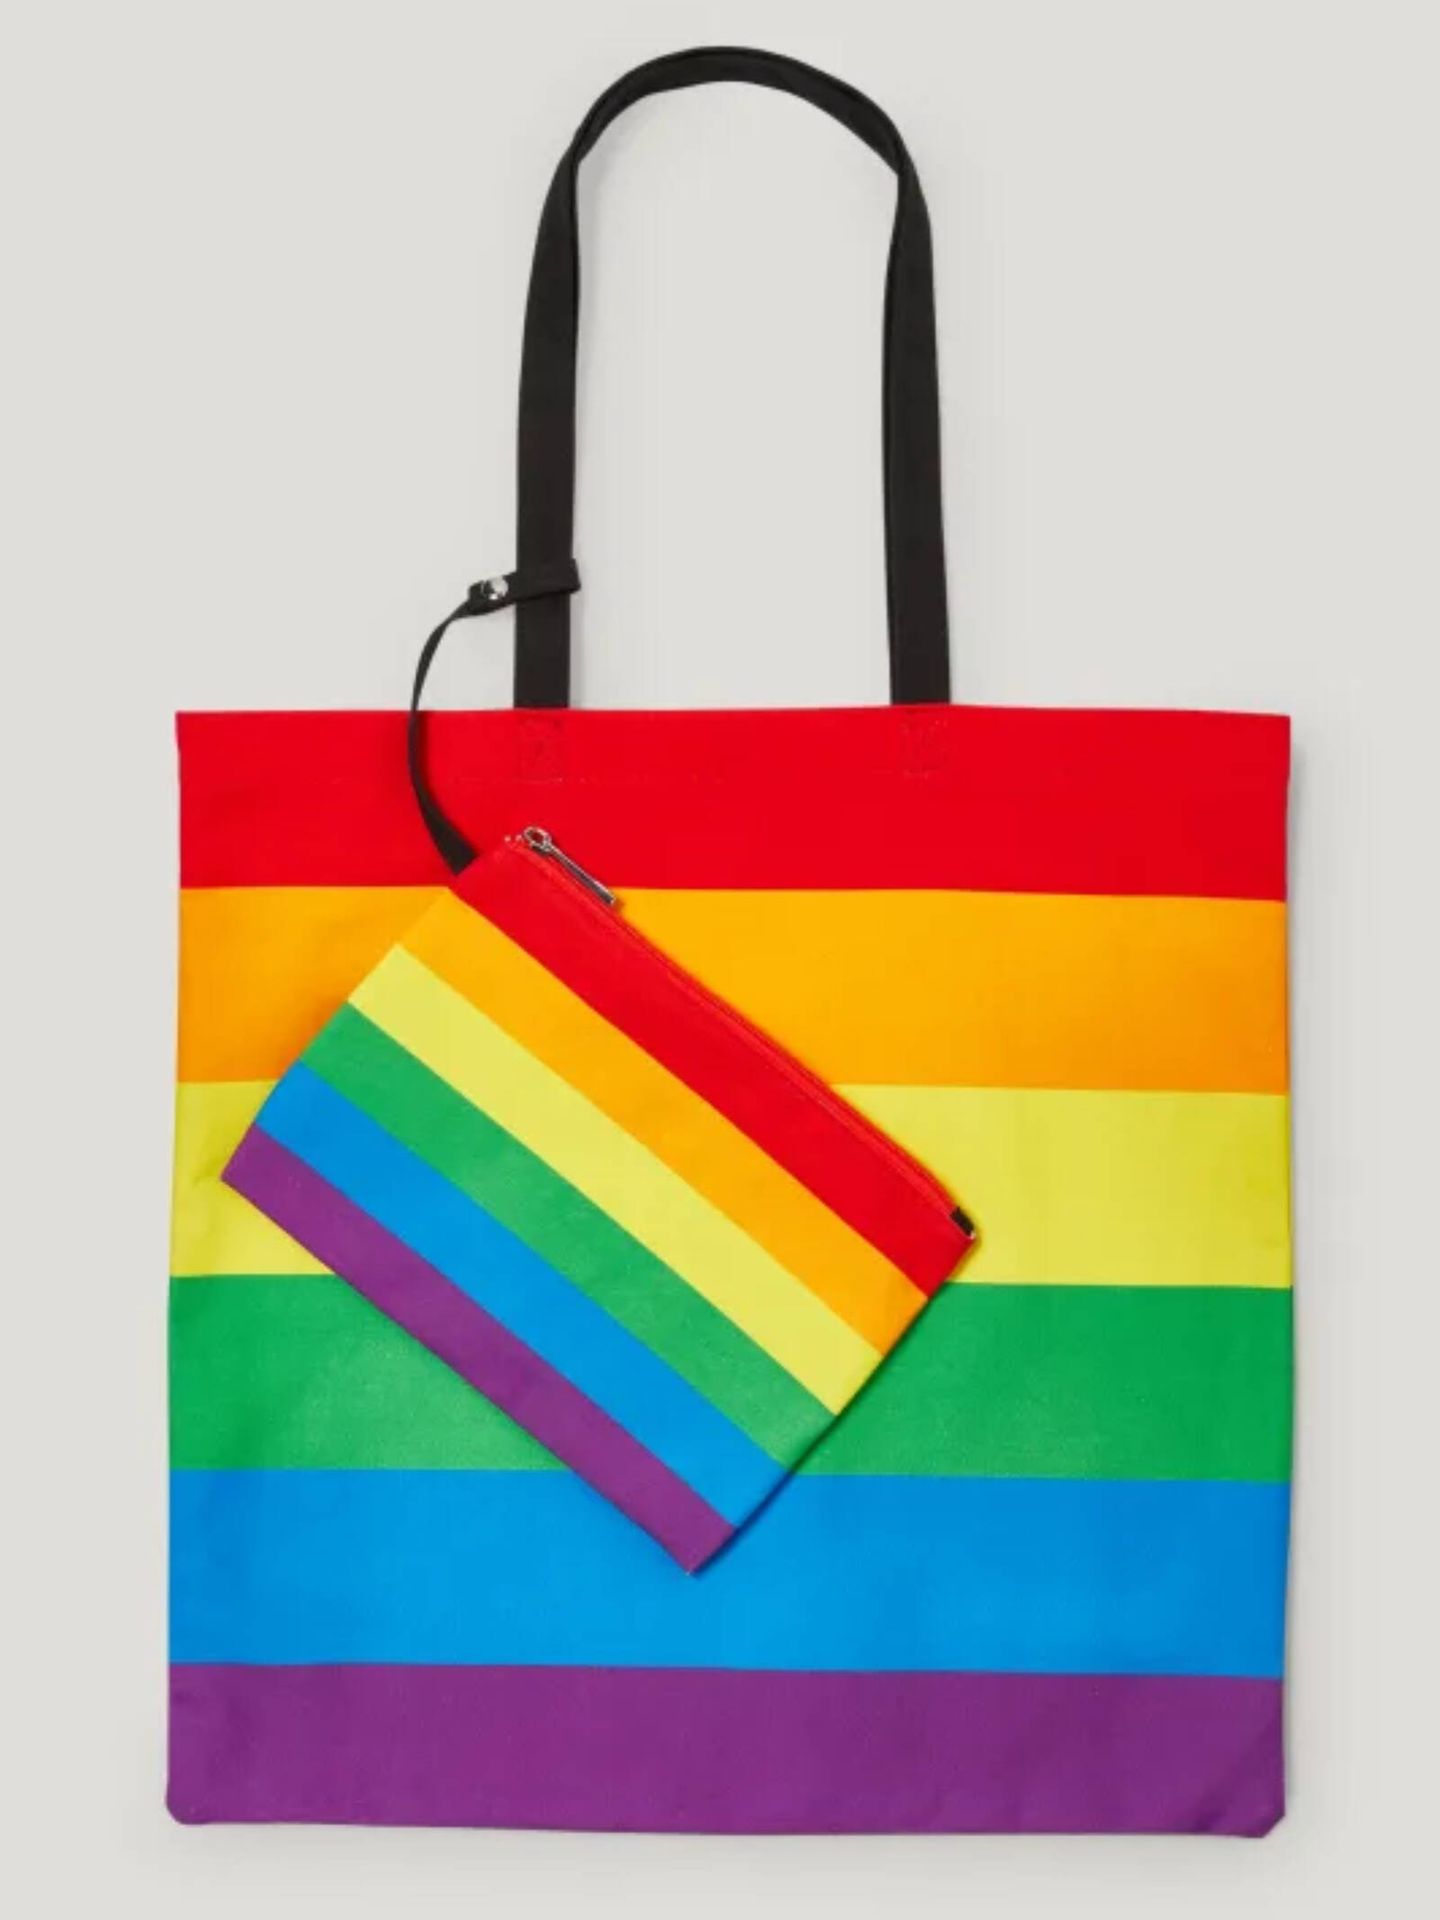 En CyA tienes esta tote bag imprescindible para celebrar el Orgullo. (Cortesía)